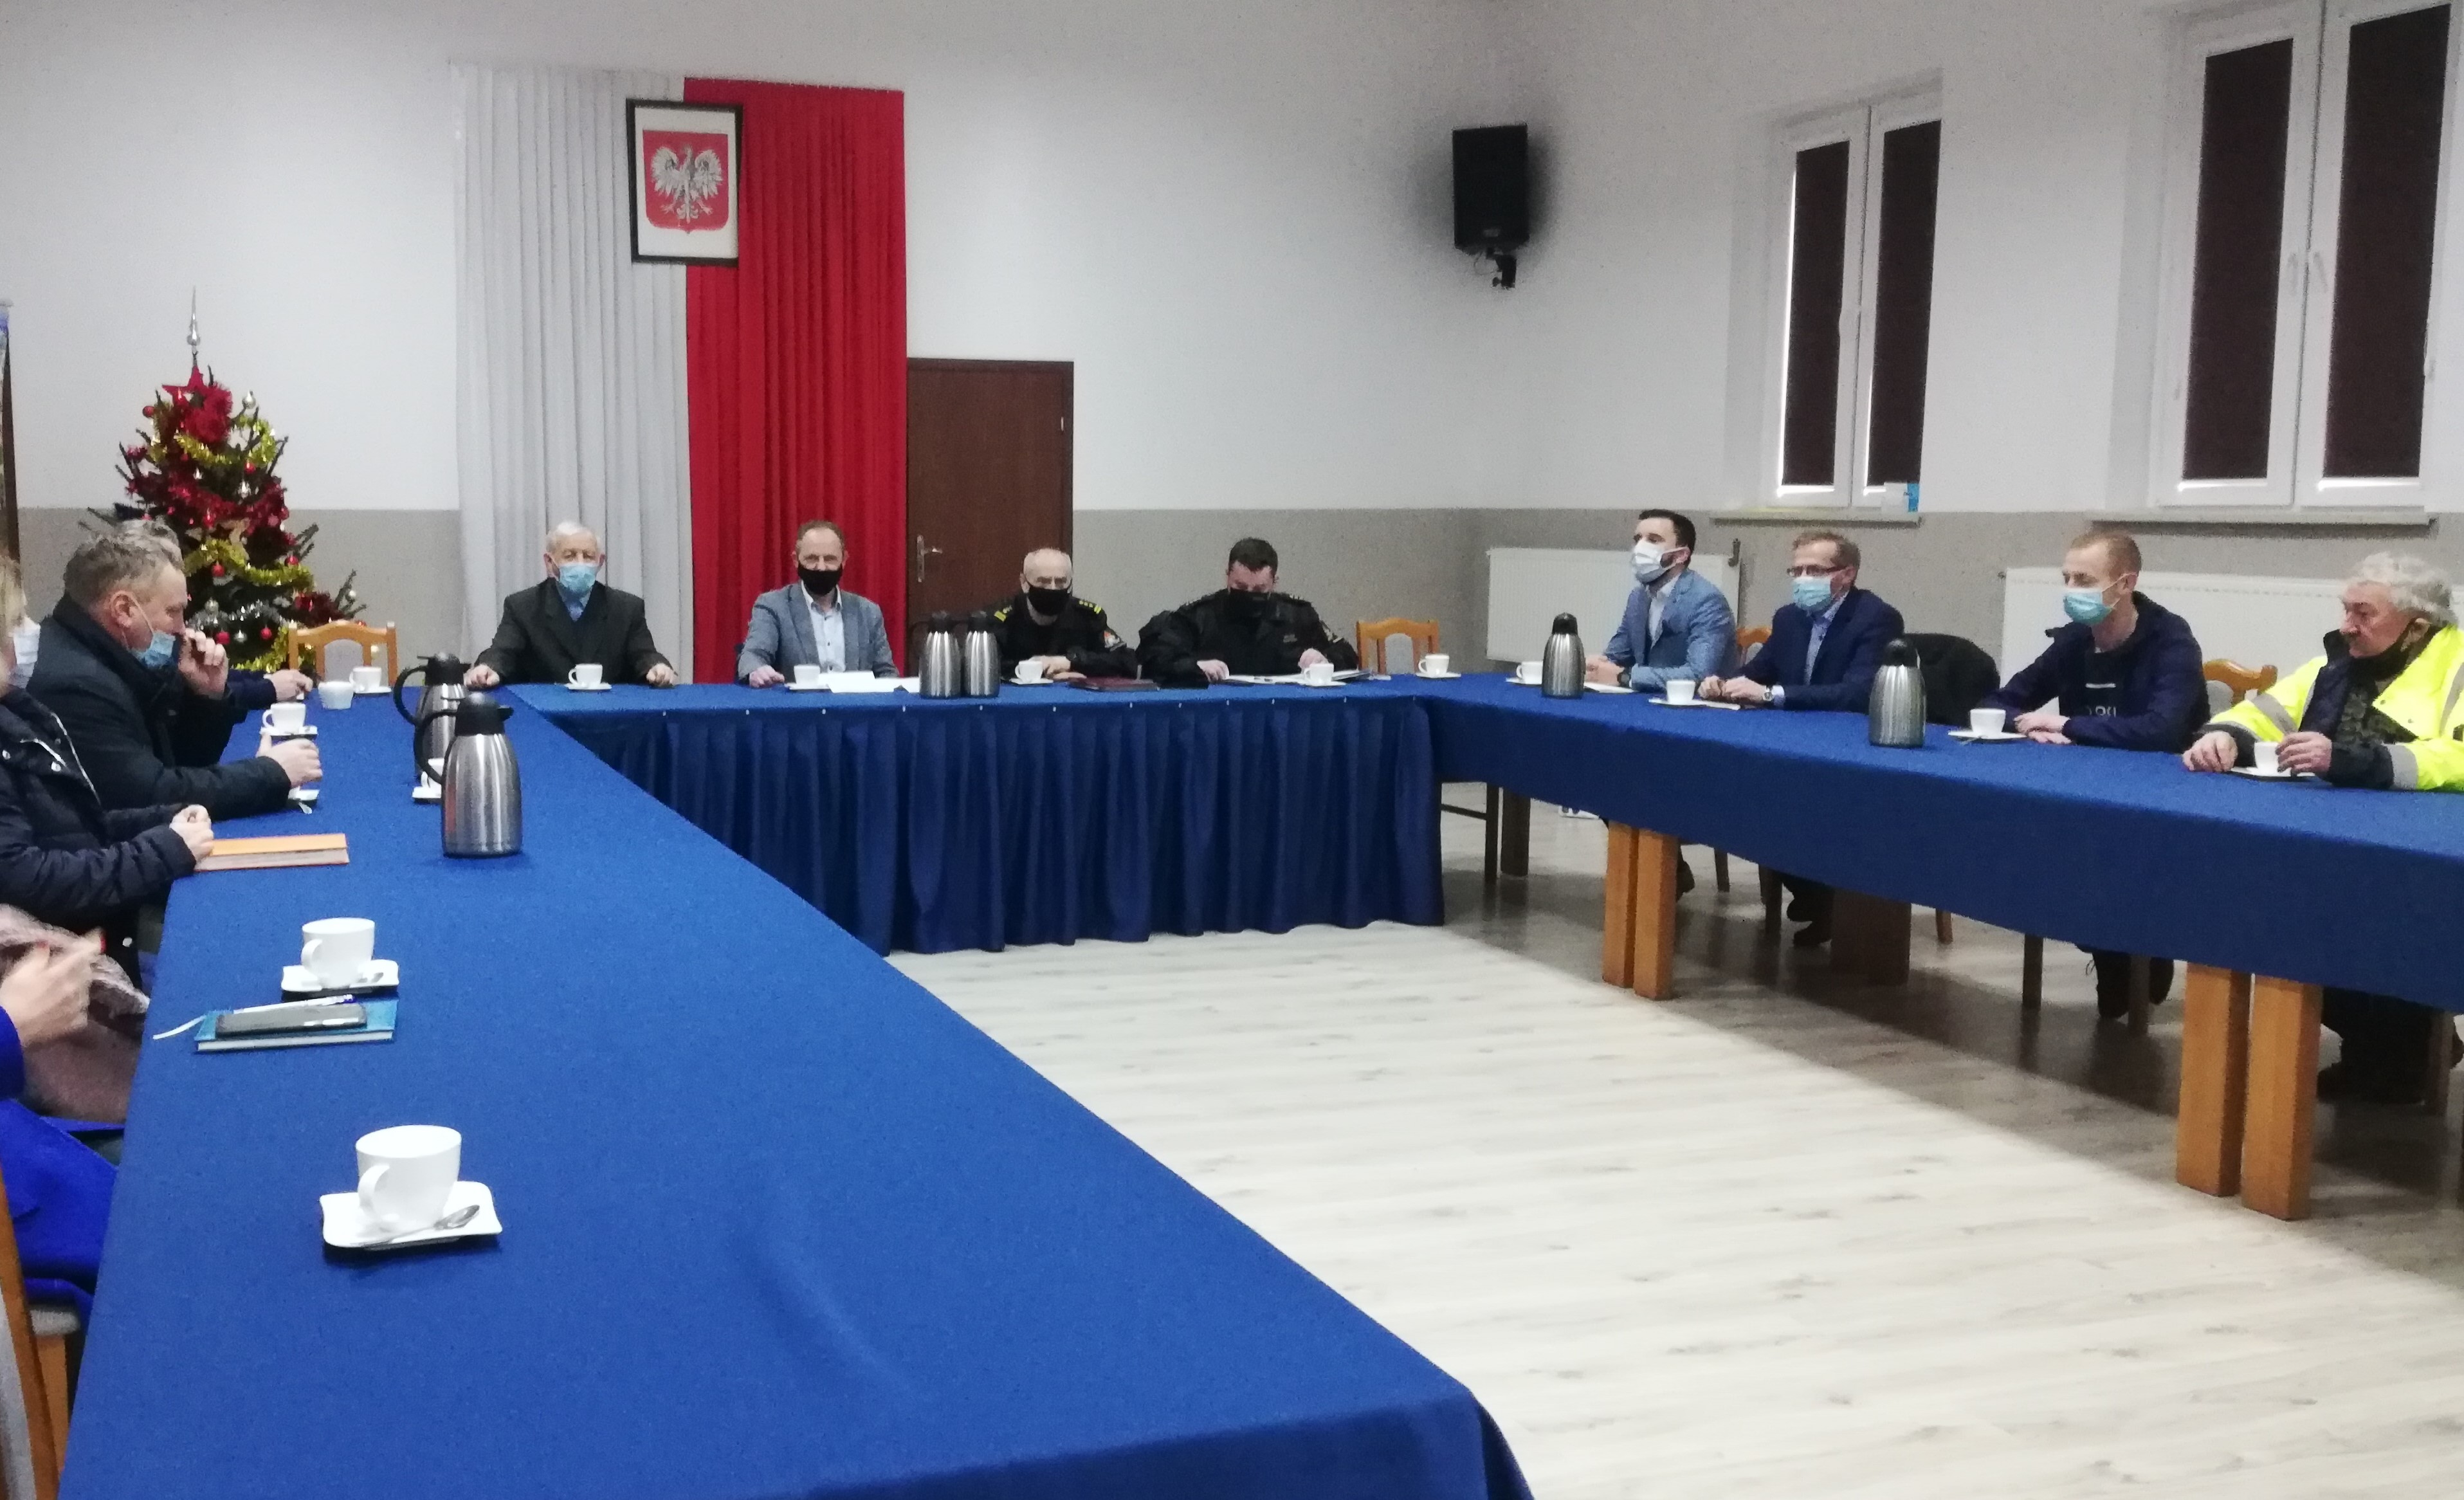 Spotkanie w Gminnym Ośrodku Kultury i Sportu w Radominie, na którym został omówiony program szczepień